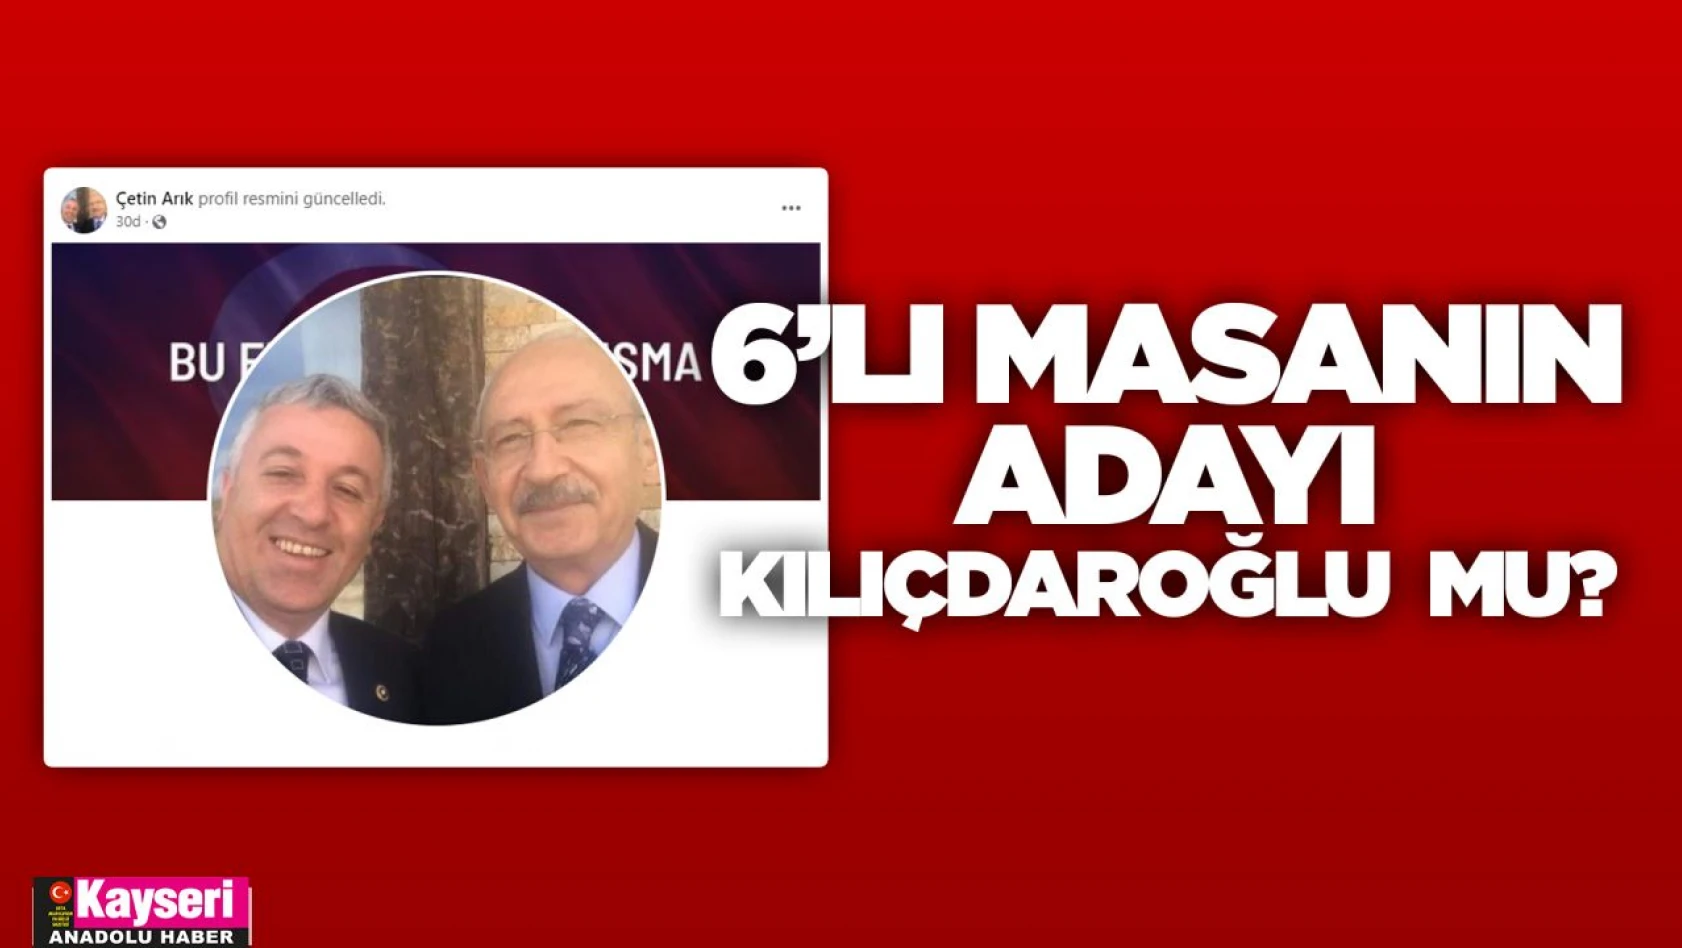 Arık'tan dikkat çeken paylaşım: Aday Kılıçdaroğlu mu?